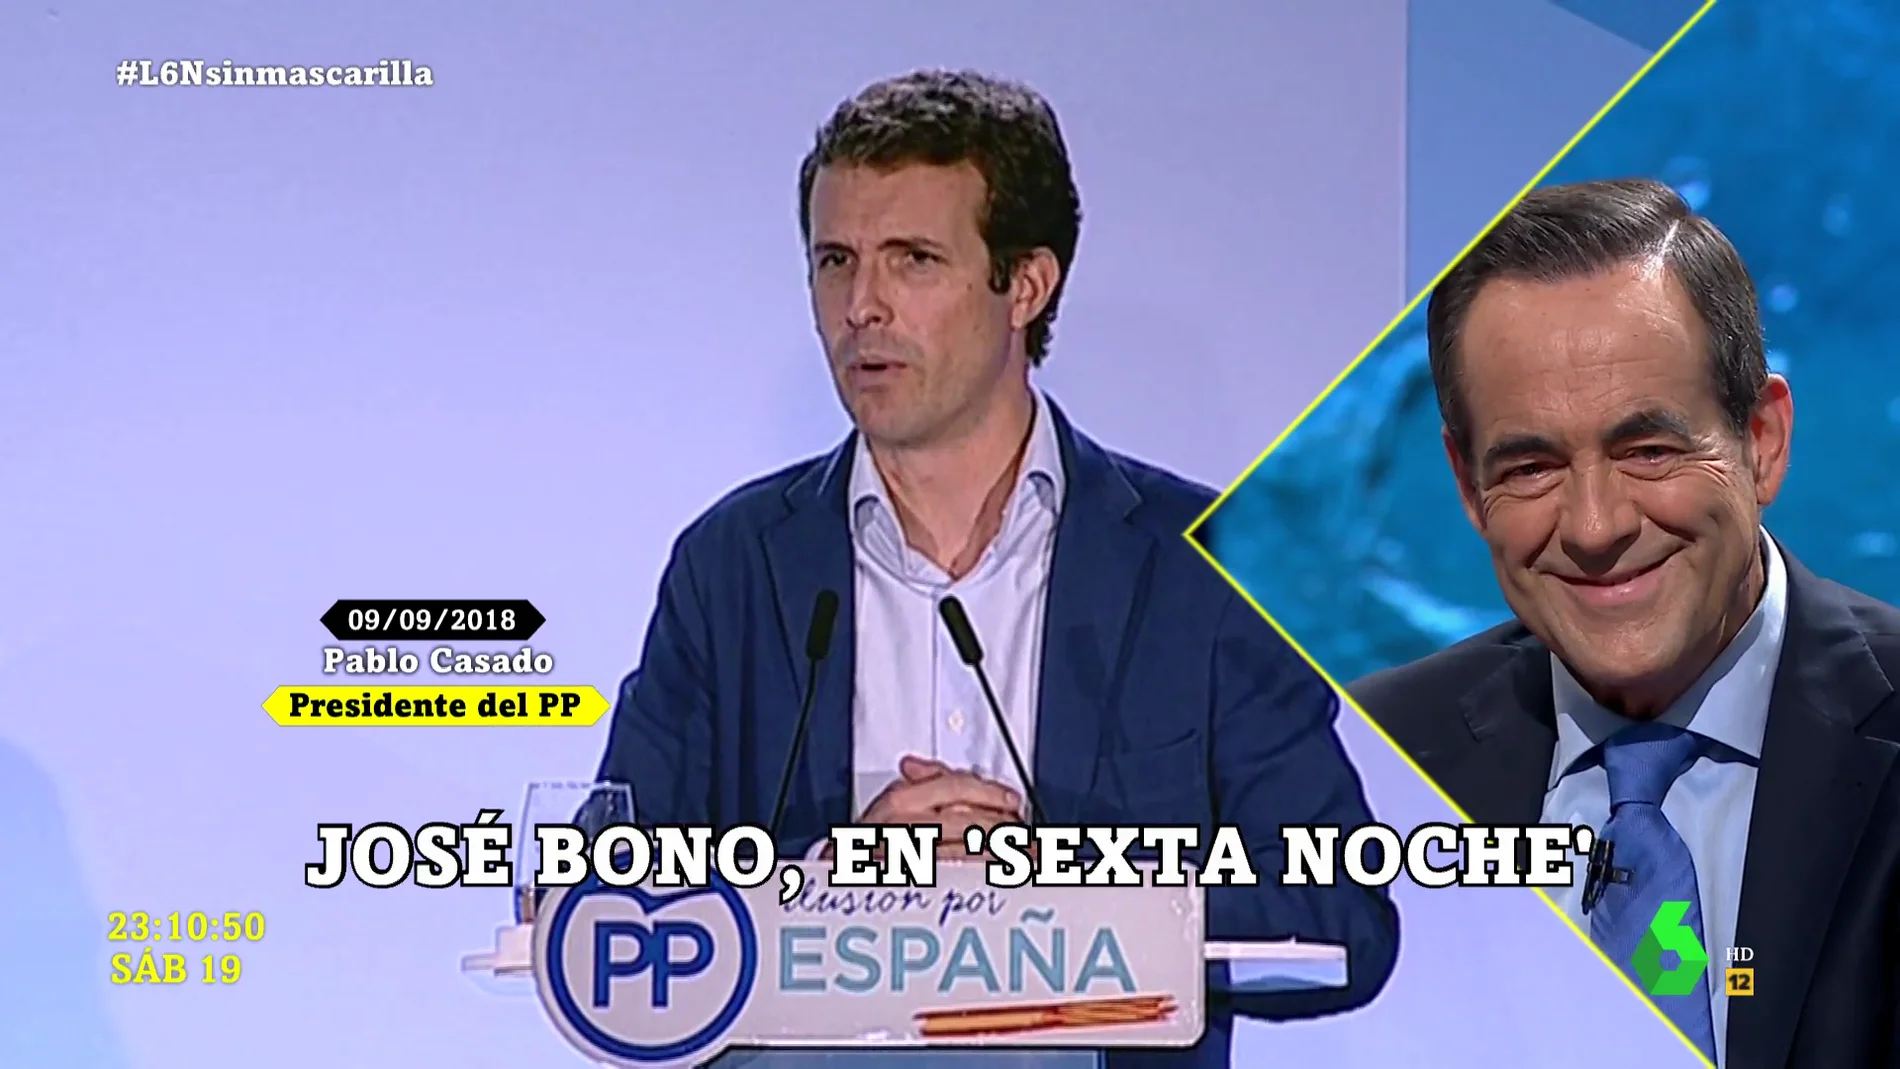 La risa de José Bono escuchando el discurso de Pablo Casado y sus "viva el rey": "Le faltaba corbata y capacidad comunicativa"